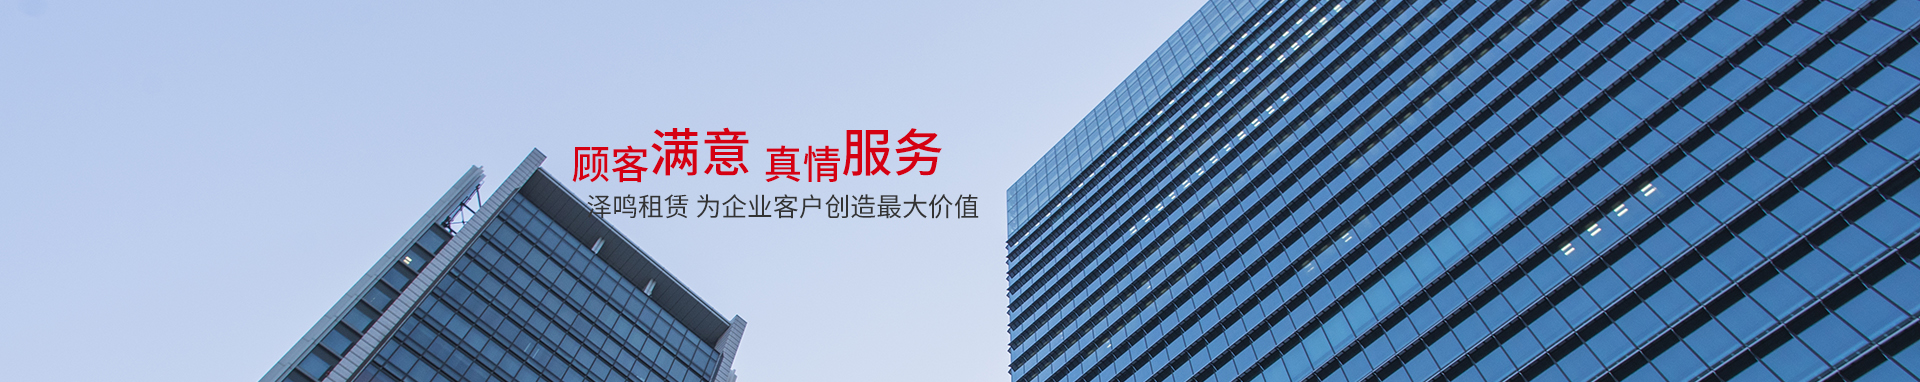 上海澤鳴信息科技有限公司